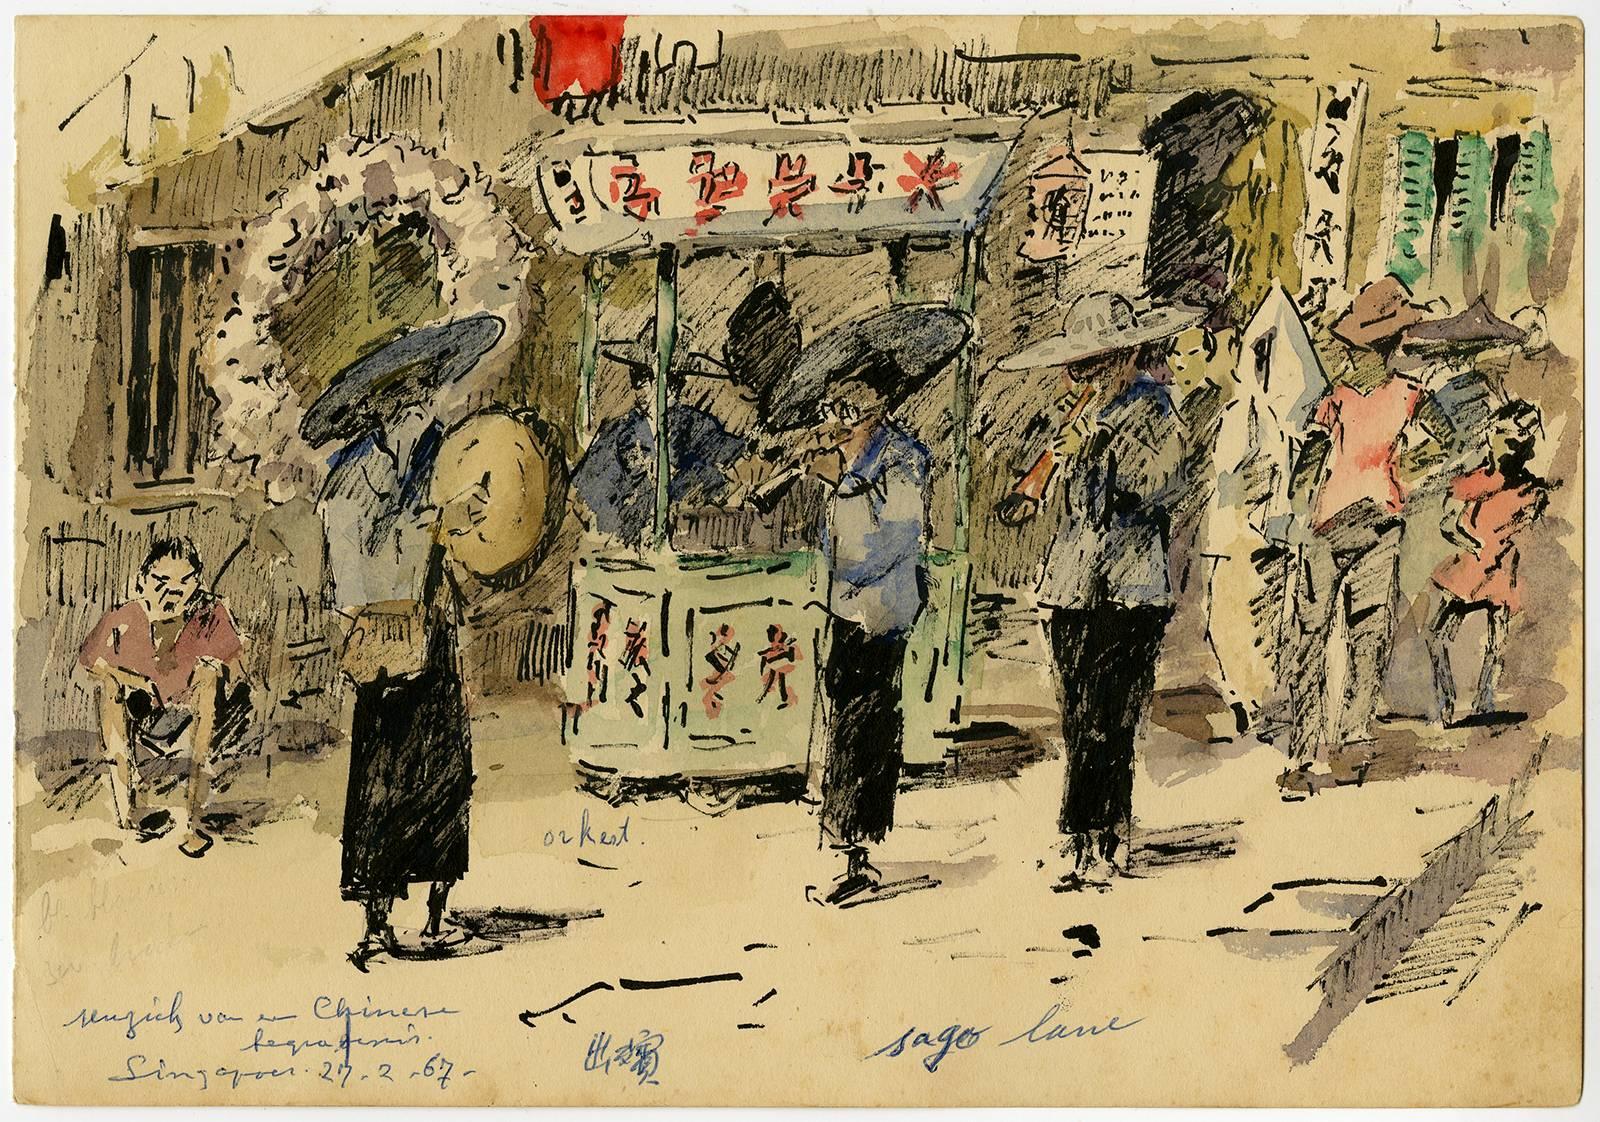 Chinese begrafenis. Singapoer. 27-2-67. - Art by Evert Jan Ligtelijn